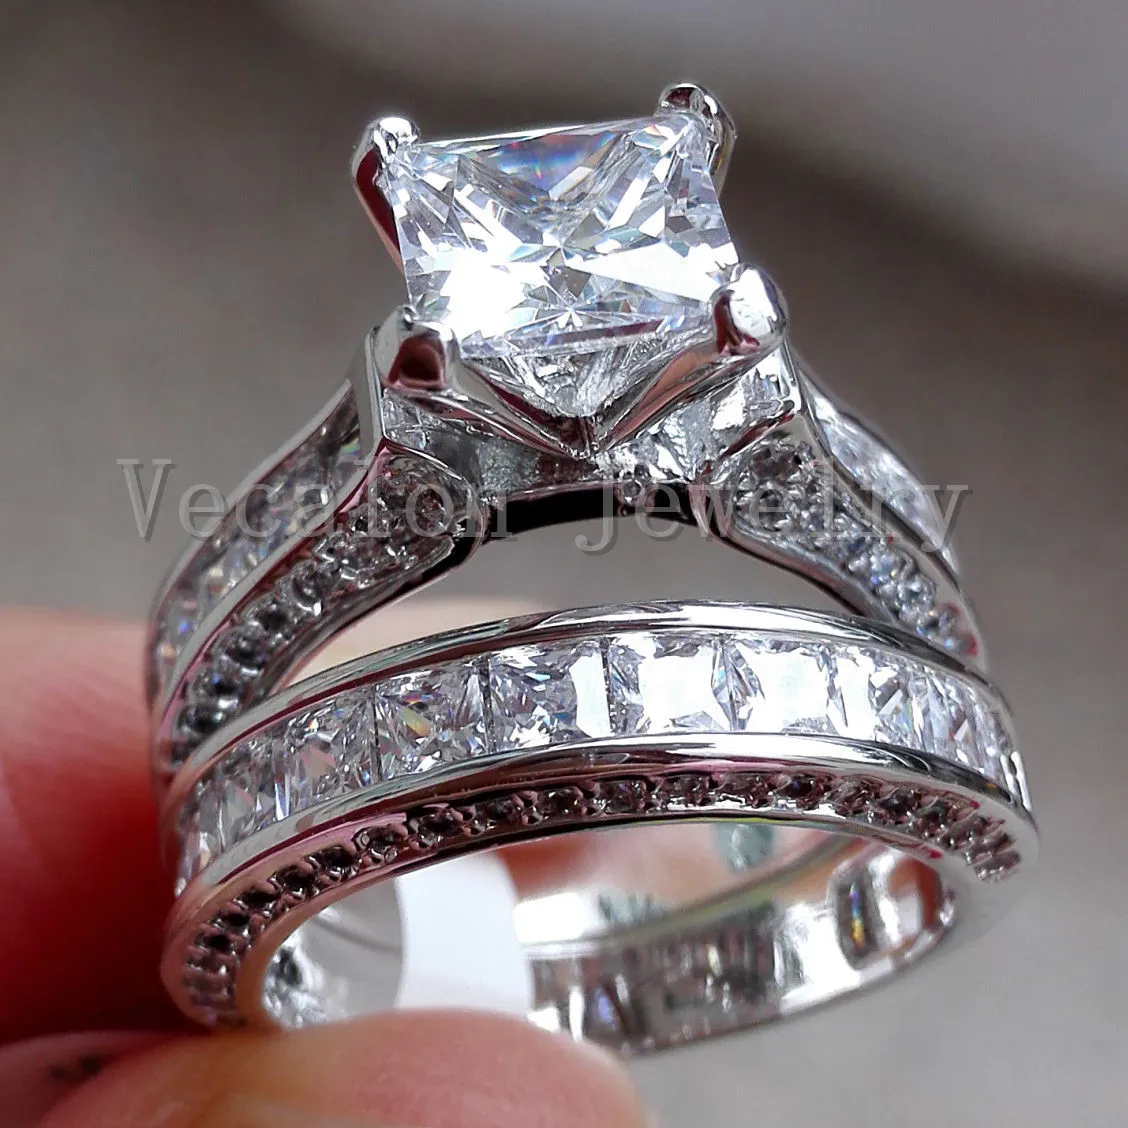 Vecalon Modesmycken 7mm Cz diamant Förlovningsring för vigselring för kvinnor 14kt vitguldfylld festring